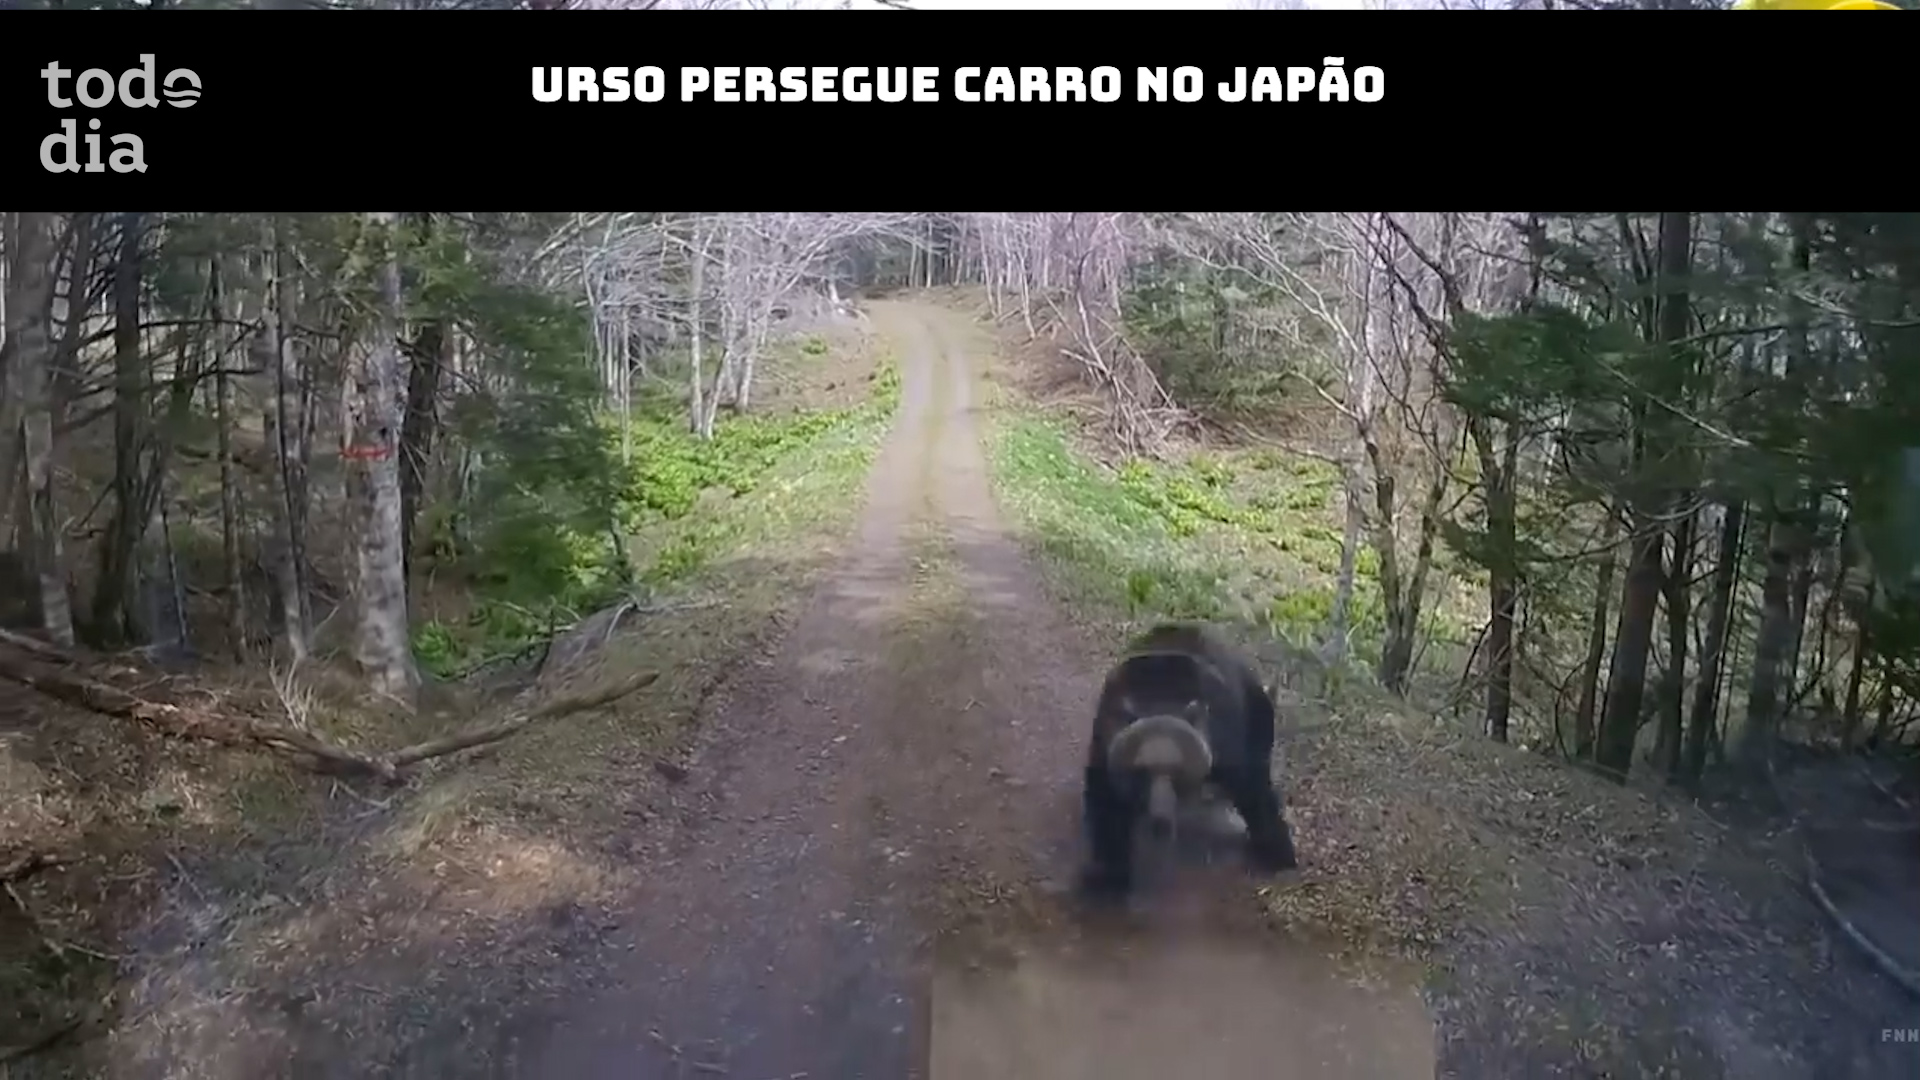 Urso persegue carro no Japão 